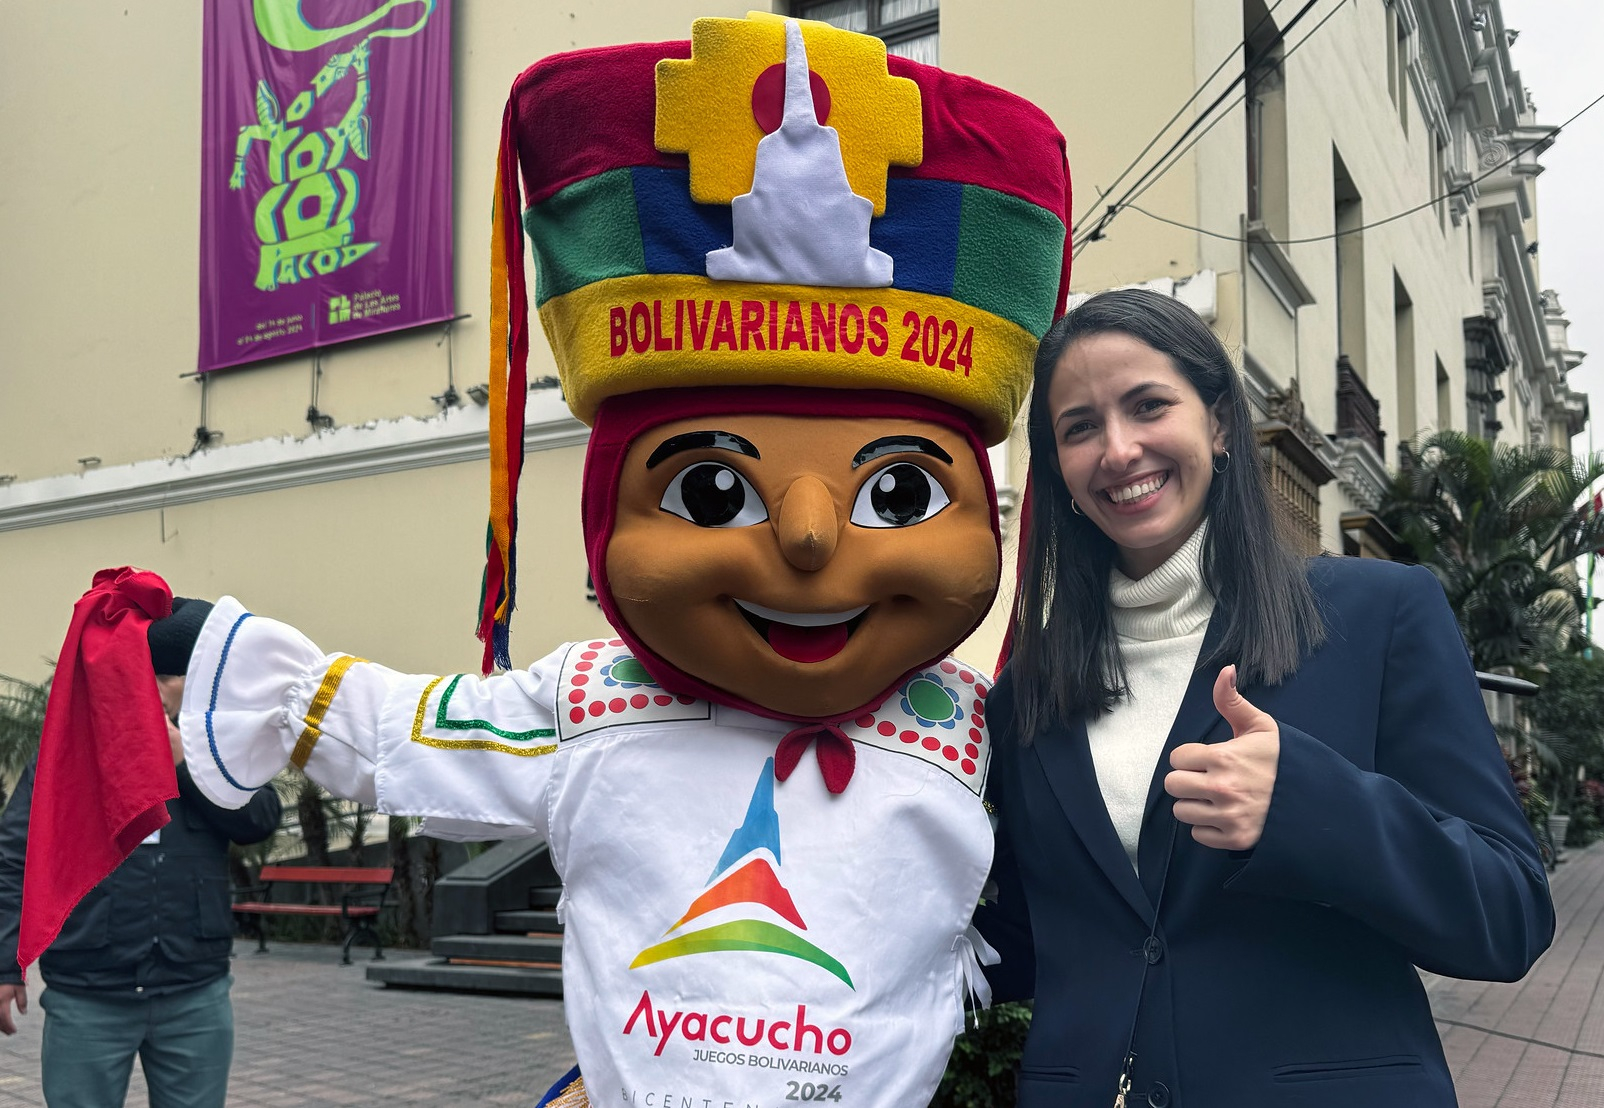 
                                 María Luisa Doig: “Seguimos soñando en grande, tendremos la mejor organización en Ayacucho” 
                            